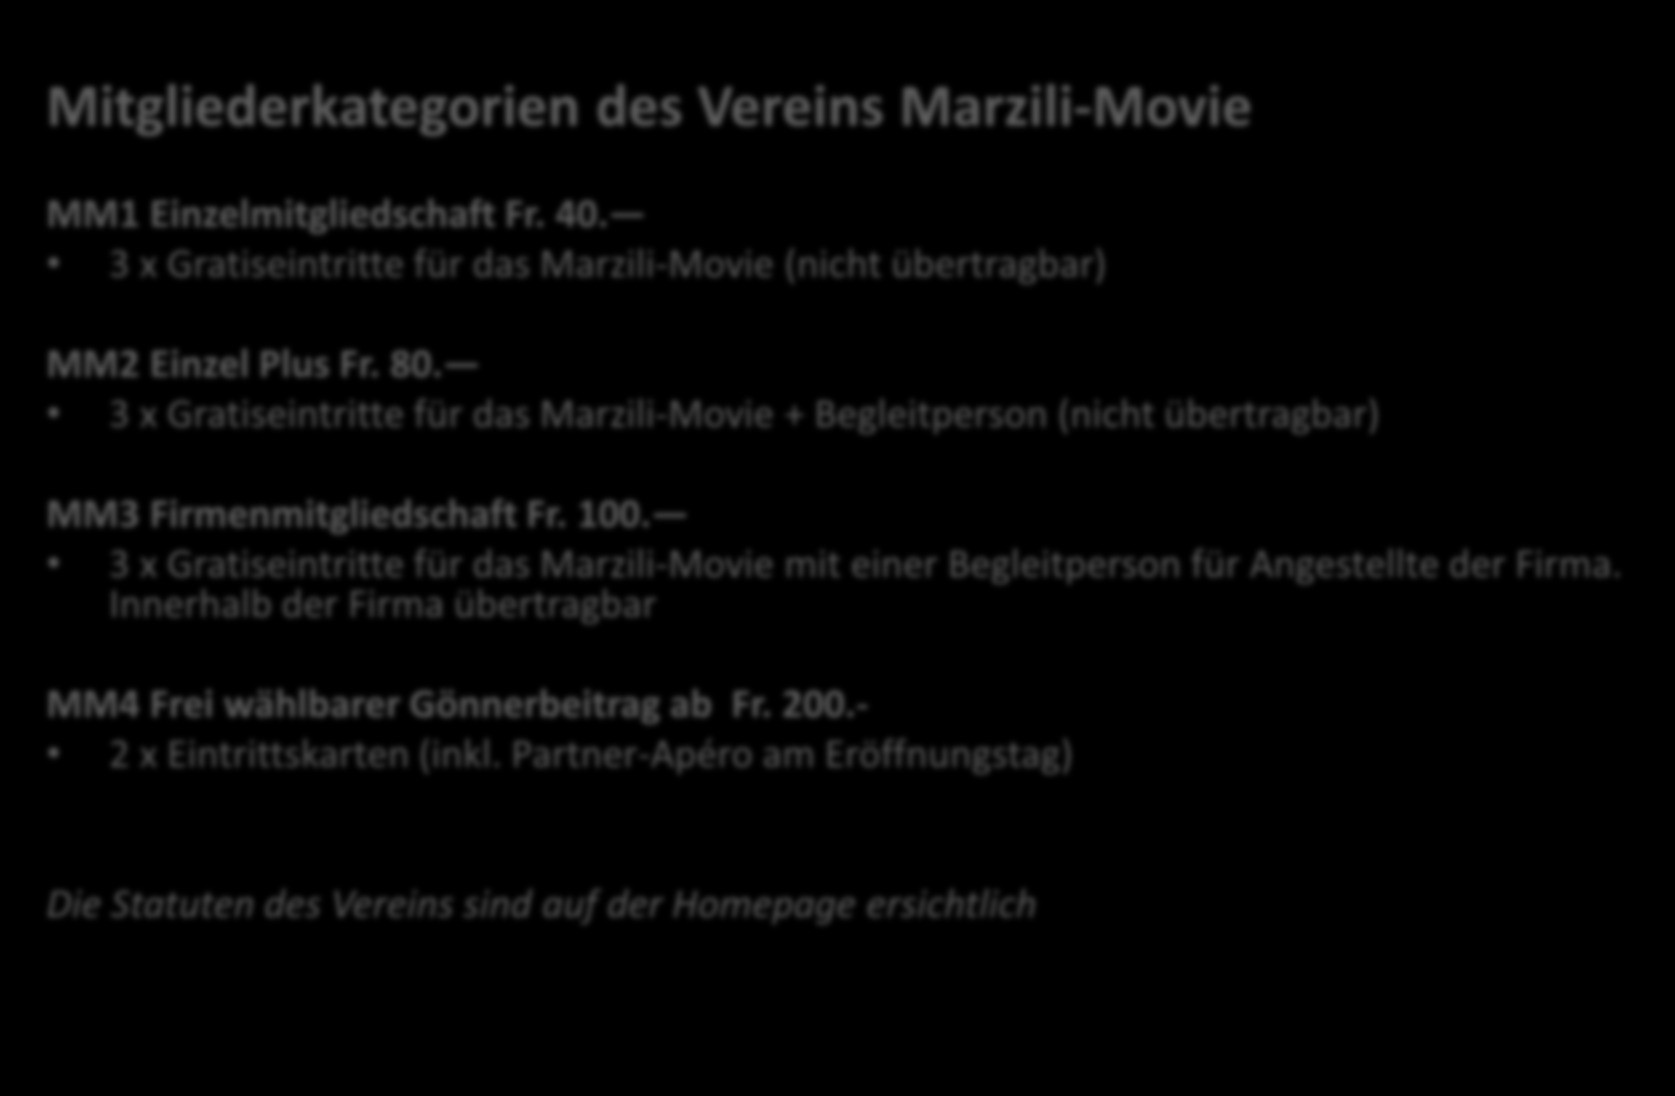 Mitgliederkategorien des Vereins Marzili-Movie MM1 Einzelmitgliedschaft Fr. 40. 3 x Gratiseintritte für das Marzili-Movie (nicht übertragbar) MM2 Einzel Plus Fr. 80.